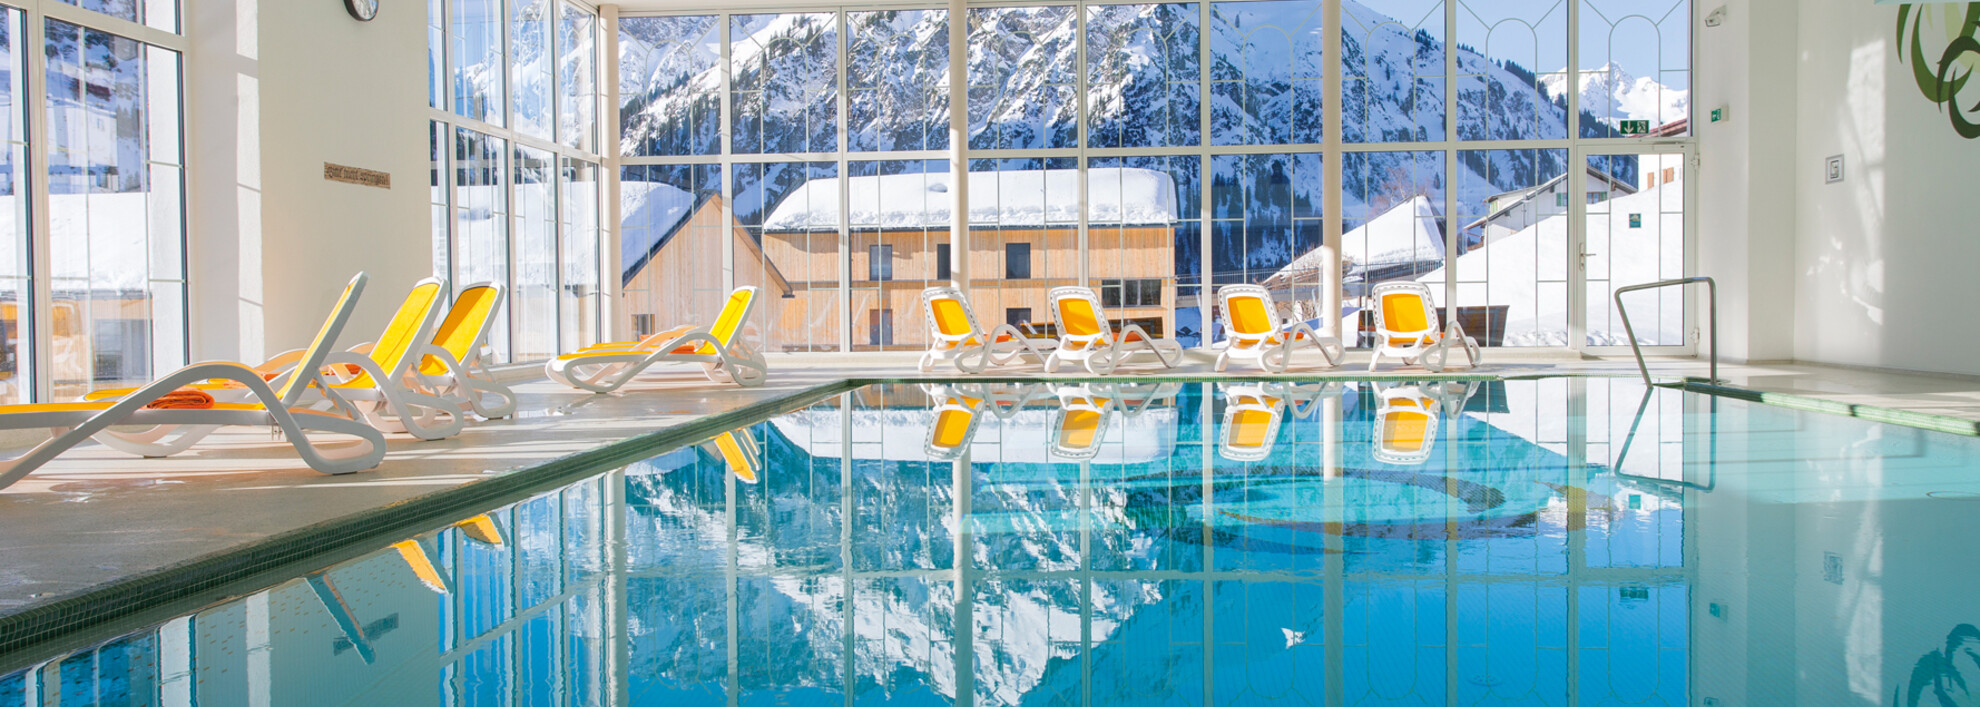 Swimingpool at Hotel Alte Krone | © Alte Krone